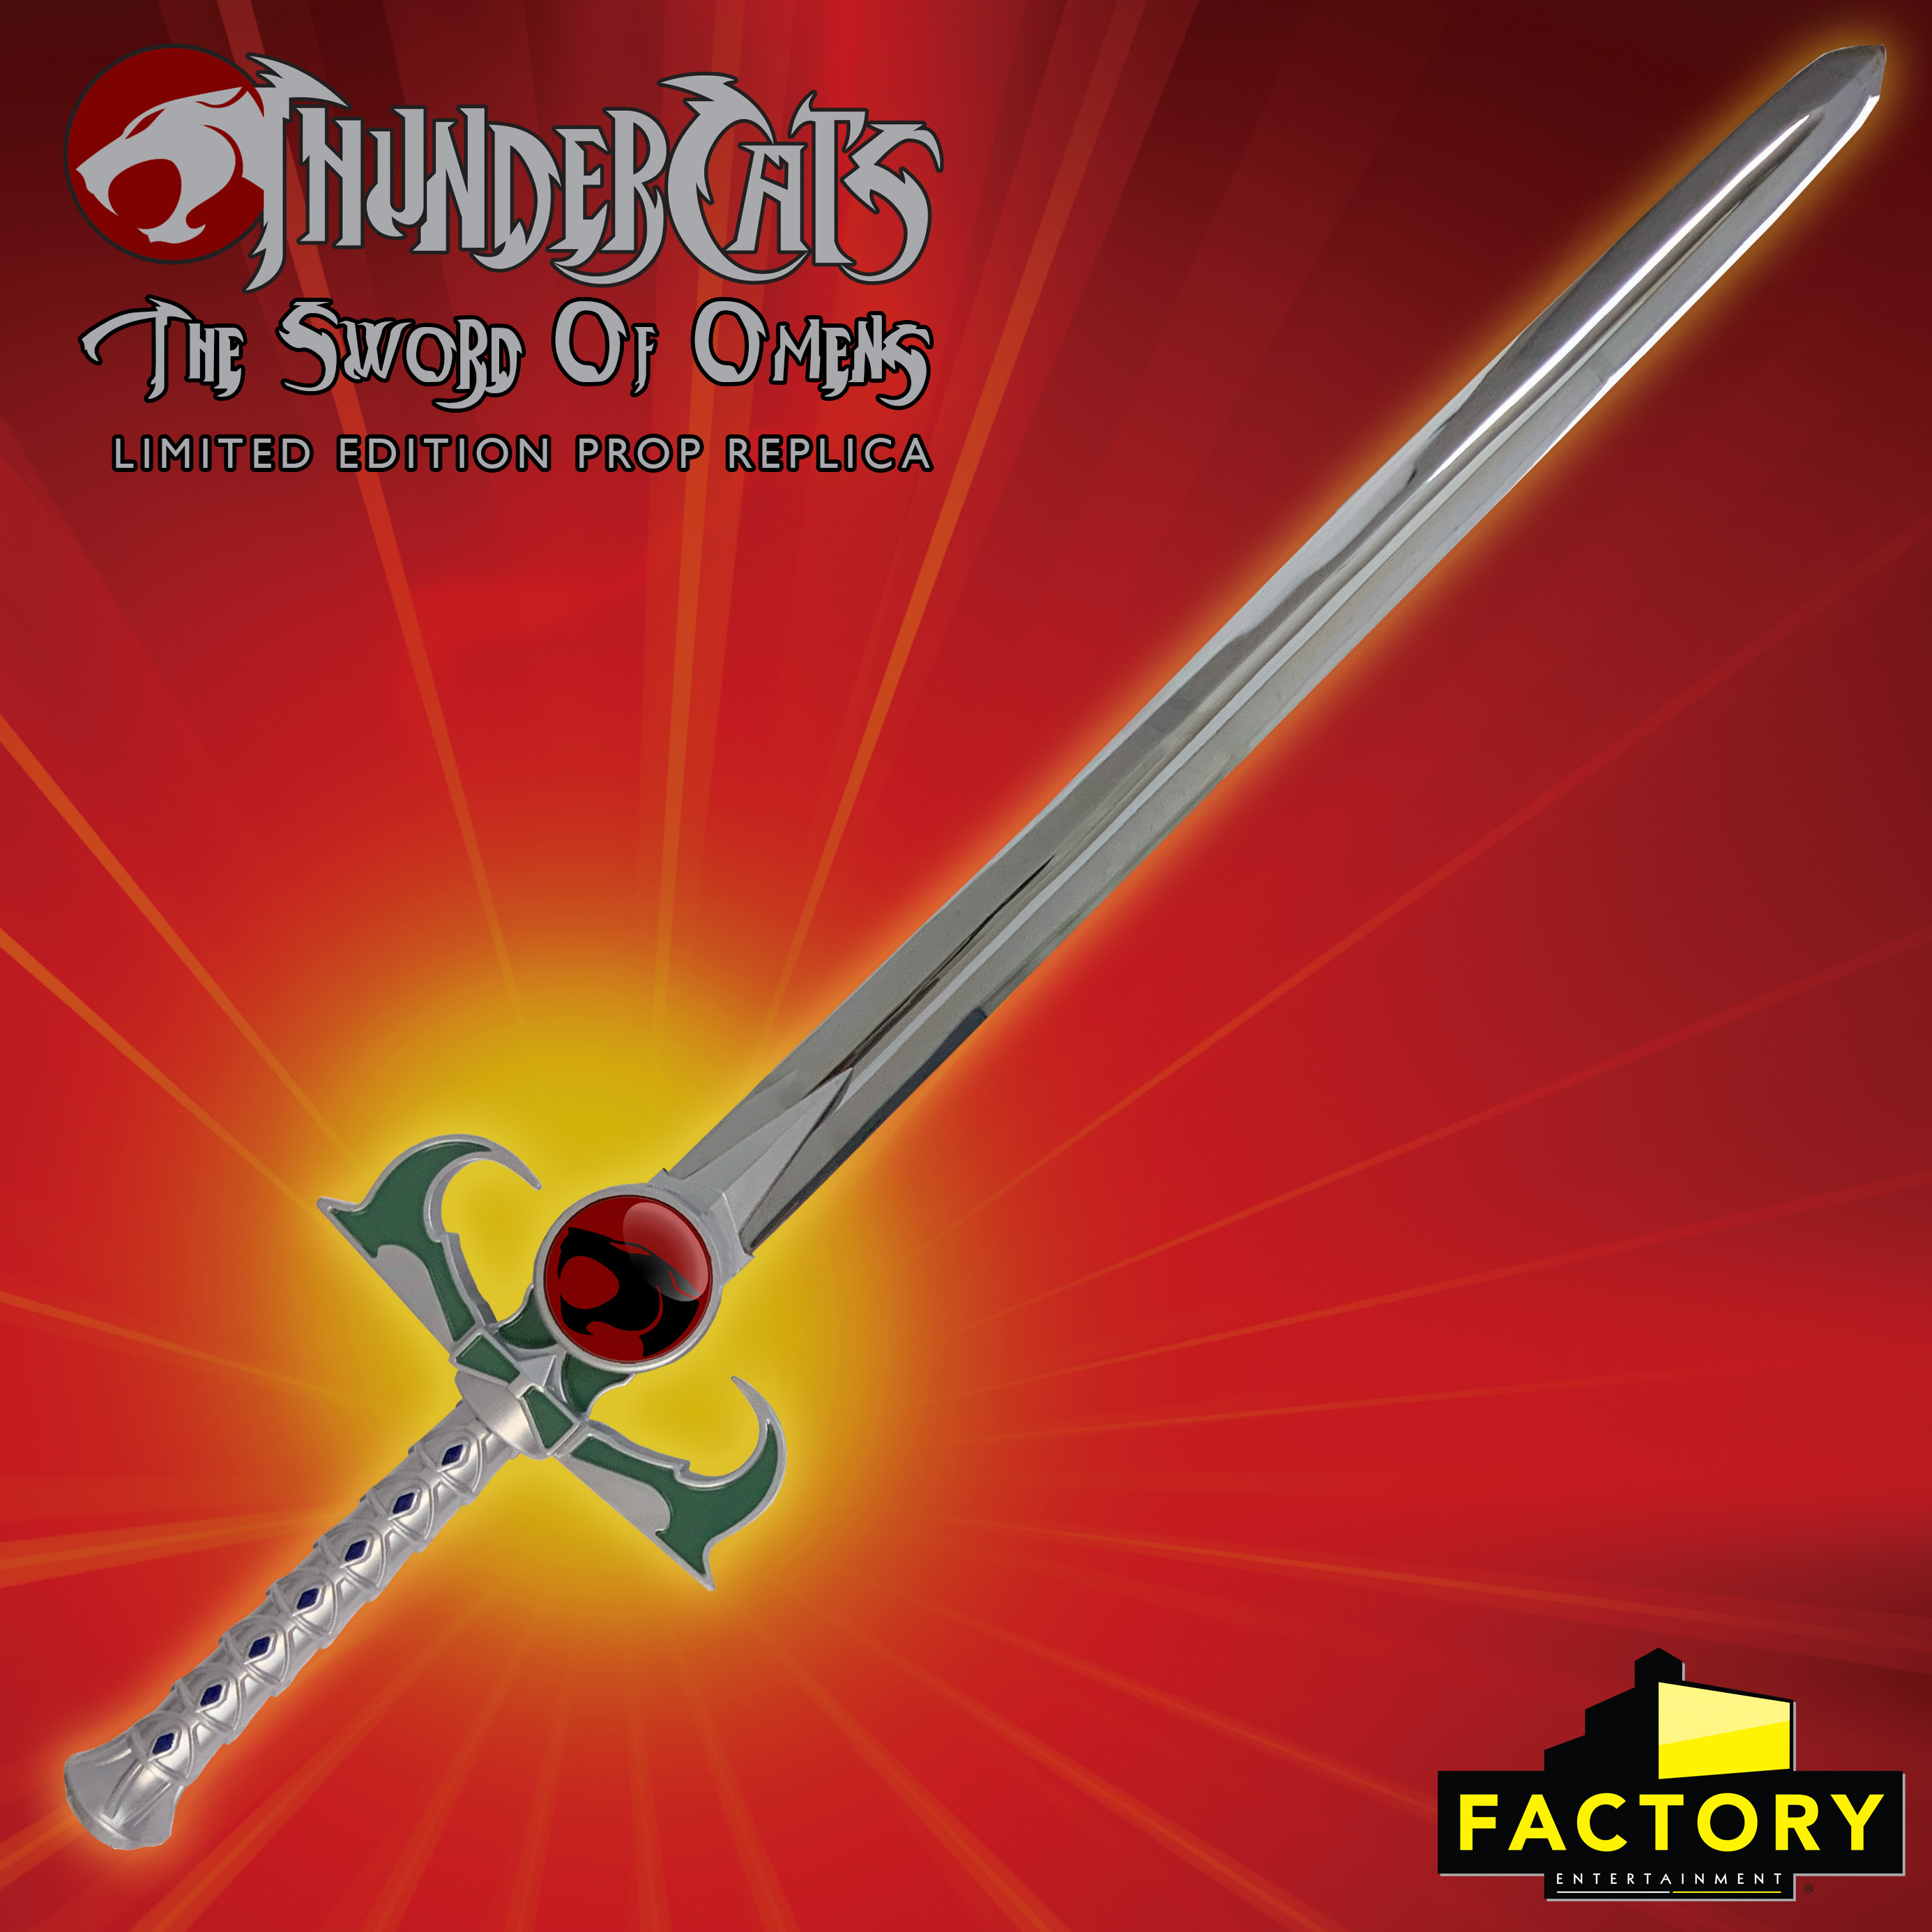 Pre-Order ThunderCats Sword of Omens Sword Prop Replica